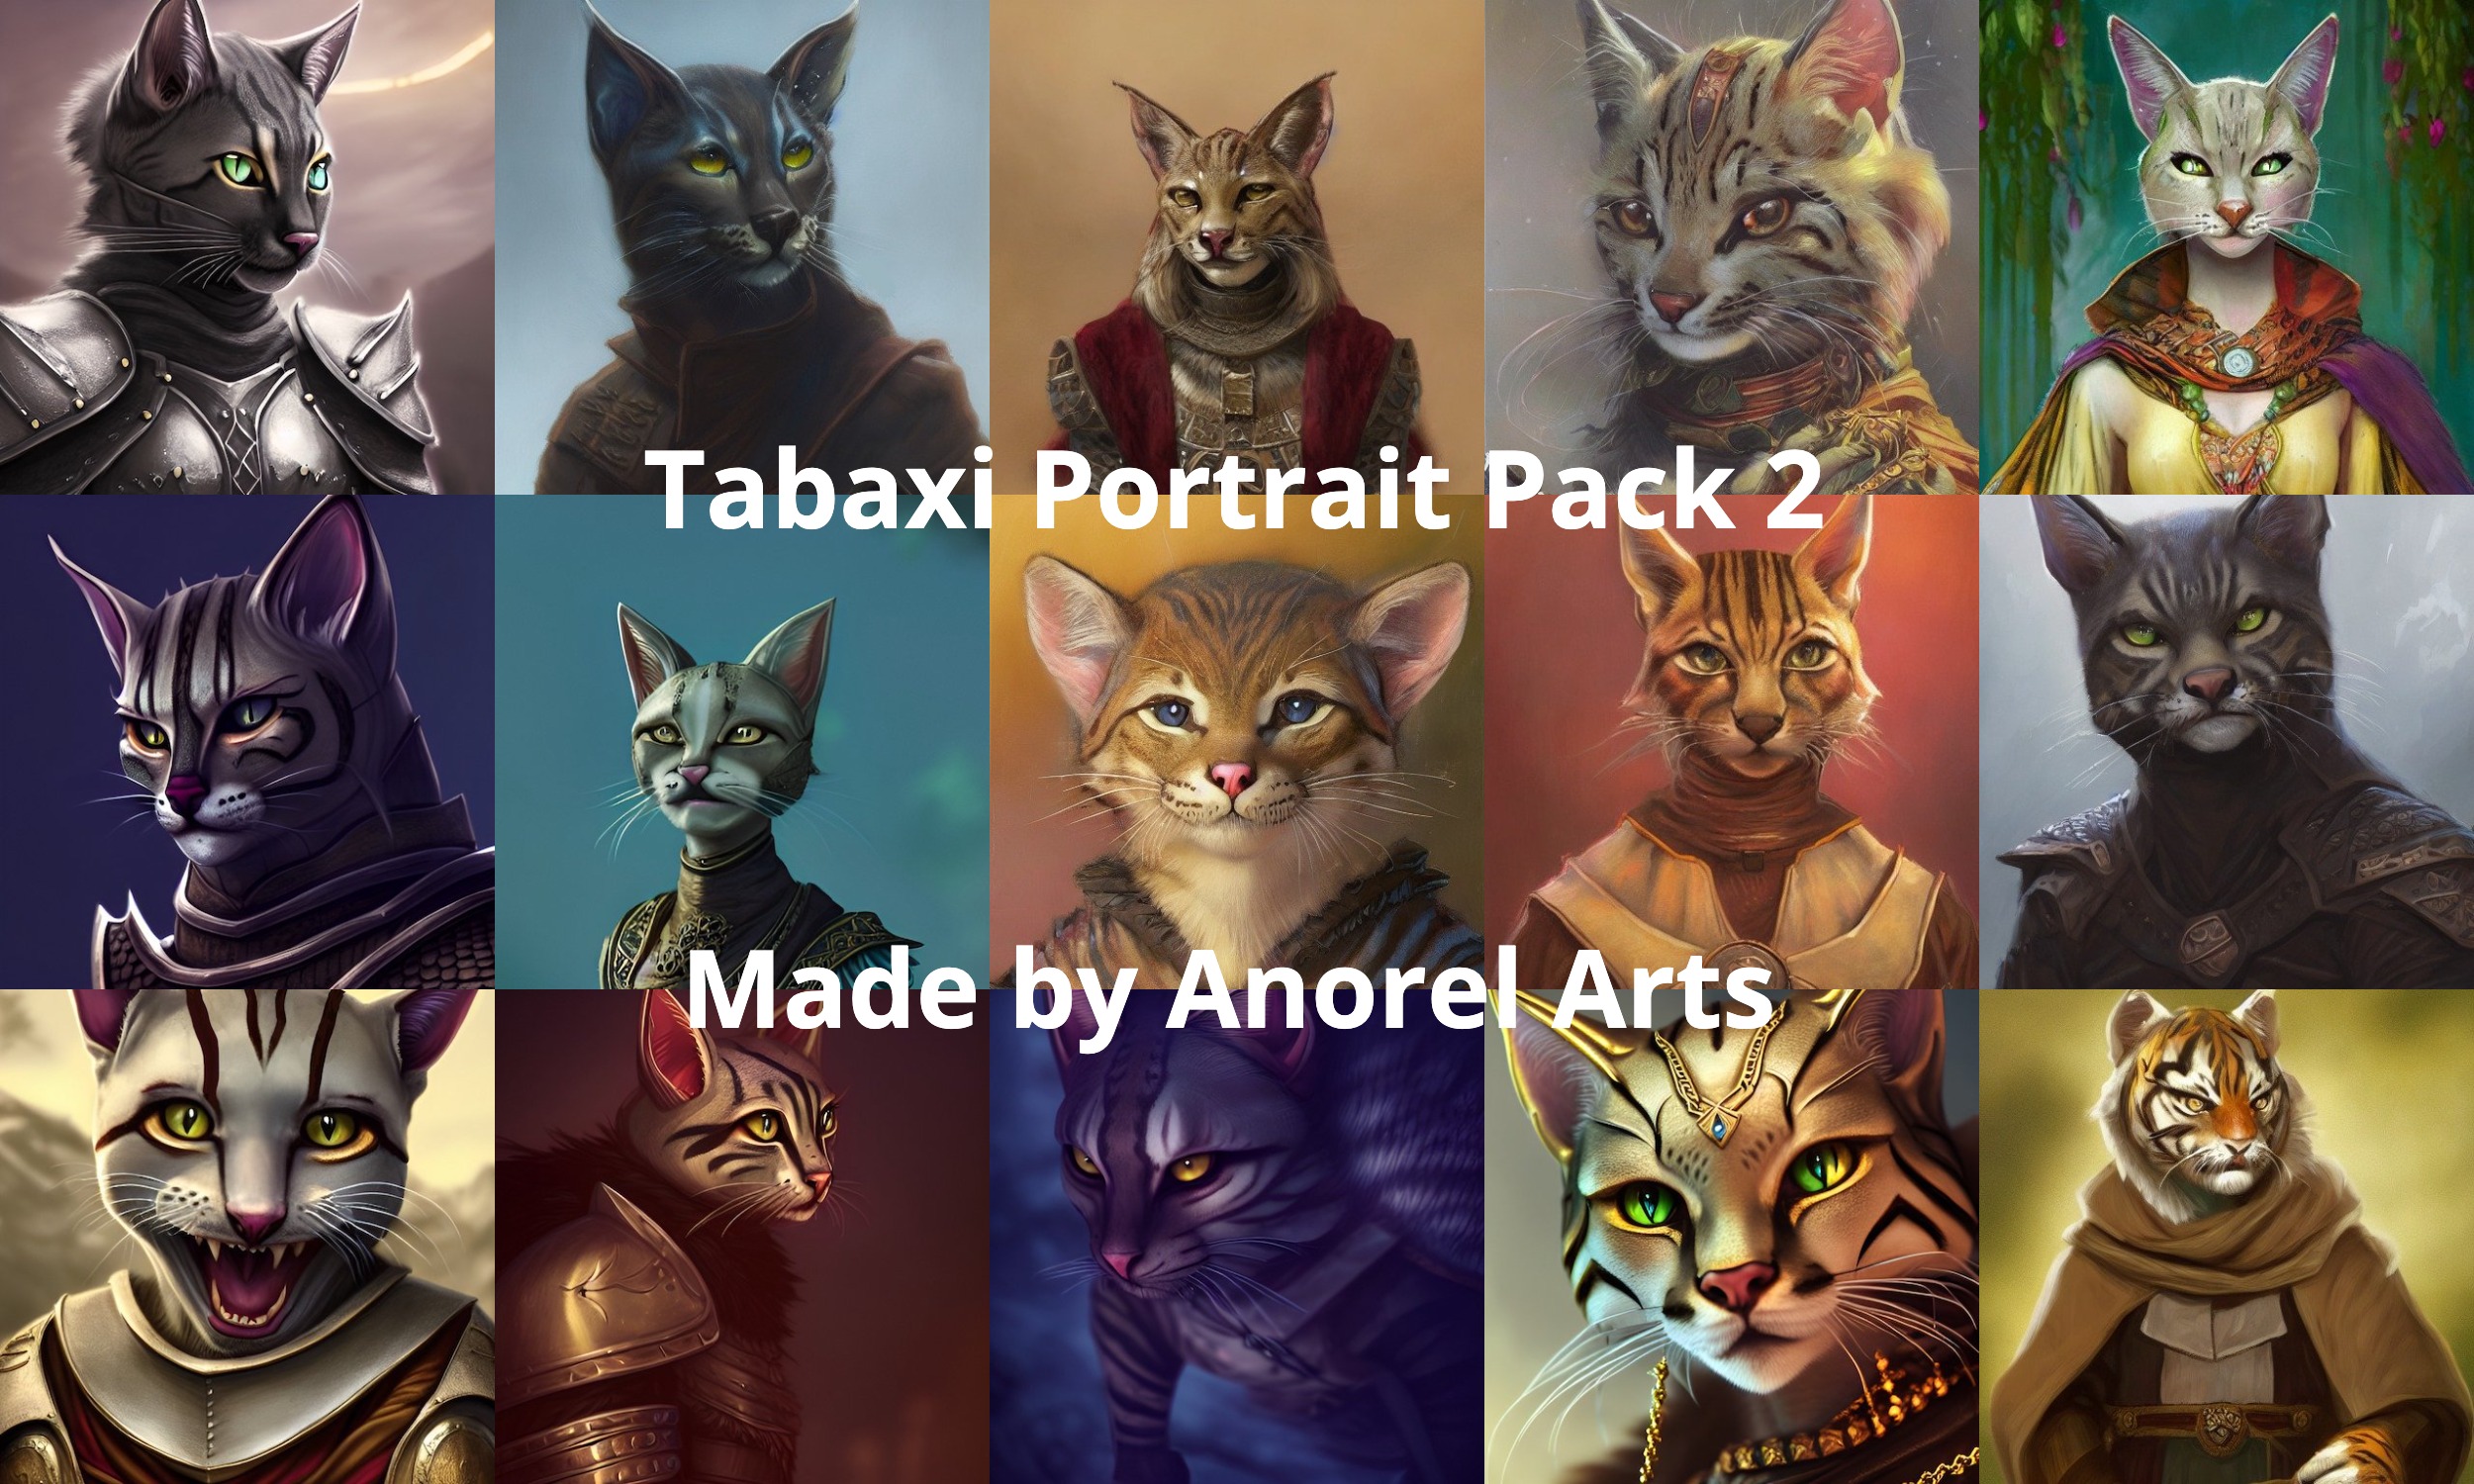 Tabaxi Portrait Pack 2